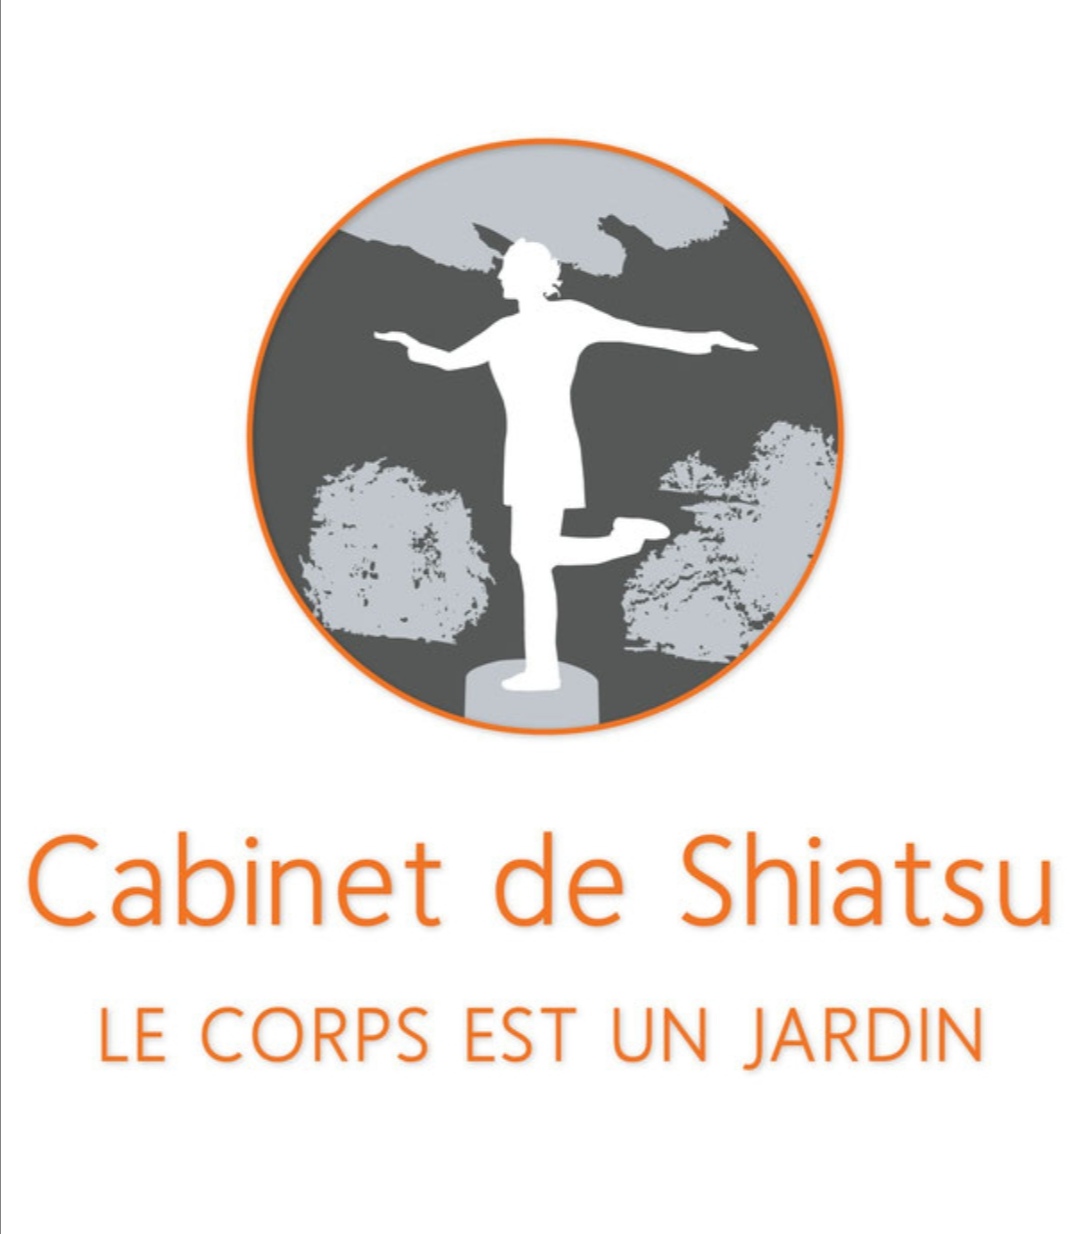 Sophie chaulassel : infos, localisation, contacts... pour ce centre de shiatsu